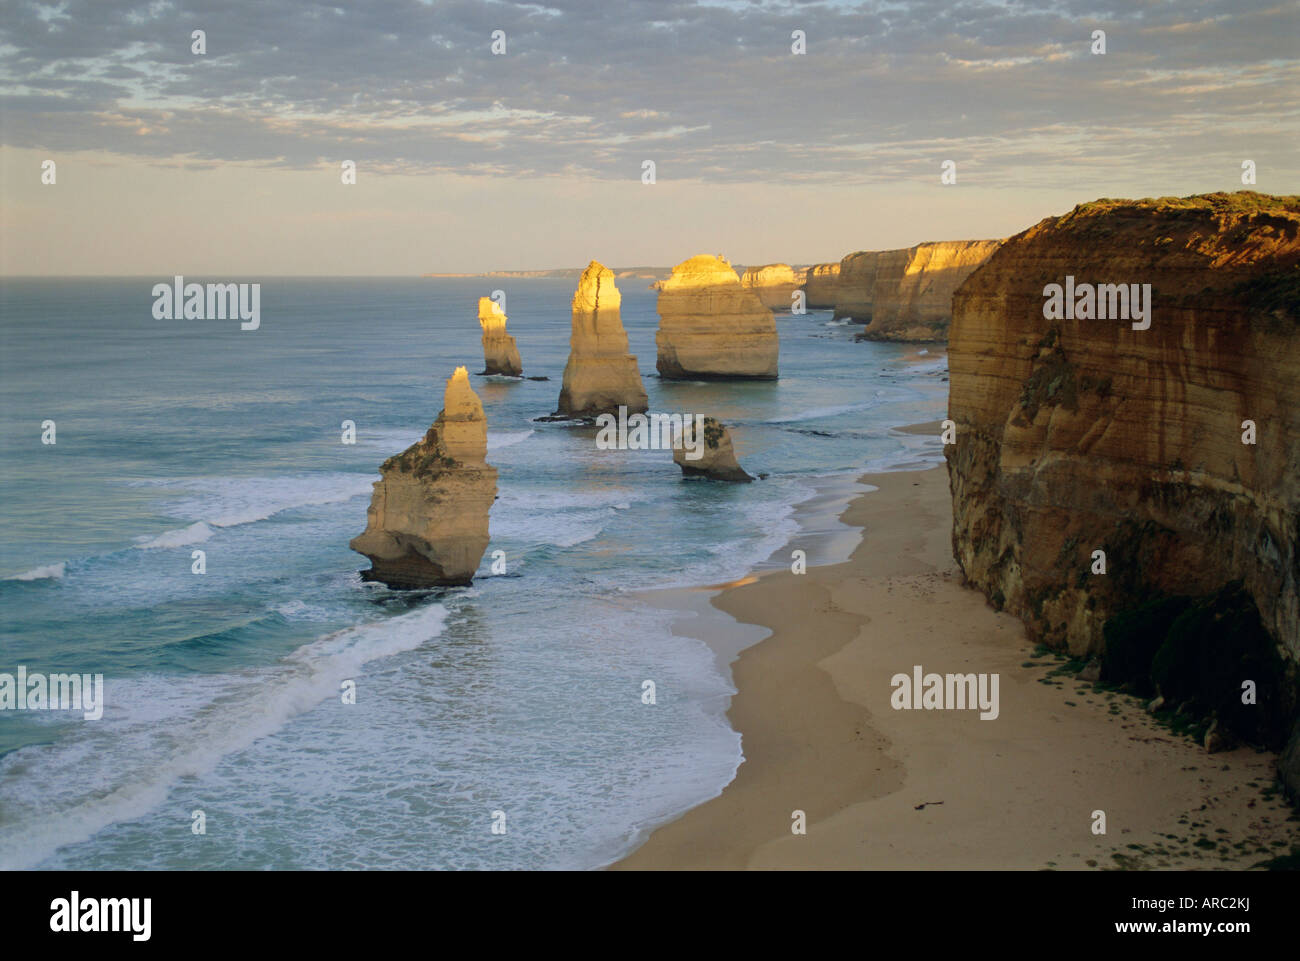 Les piles de la mer sur la côte, les douze apôtres, Great Ocean Road, Victoria, Australie Banque D'Images